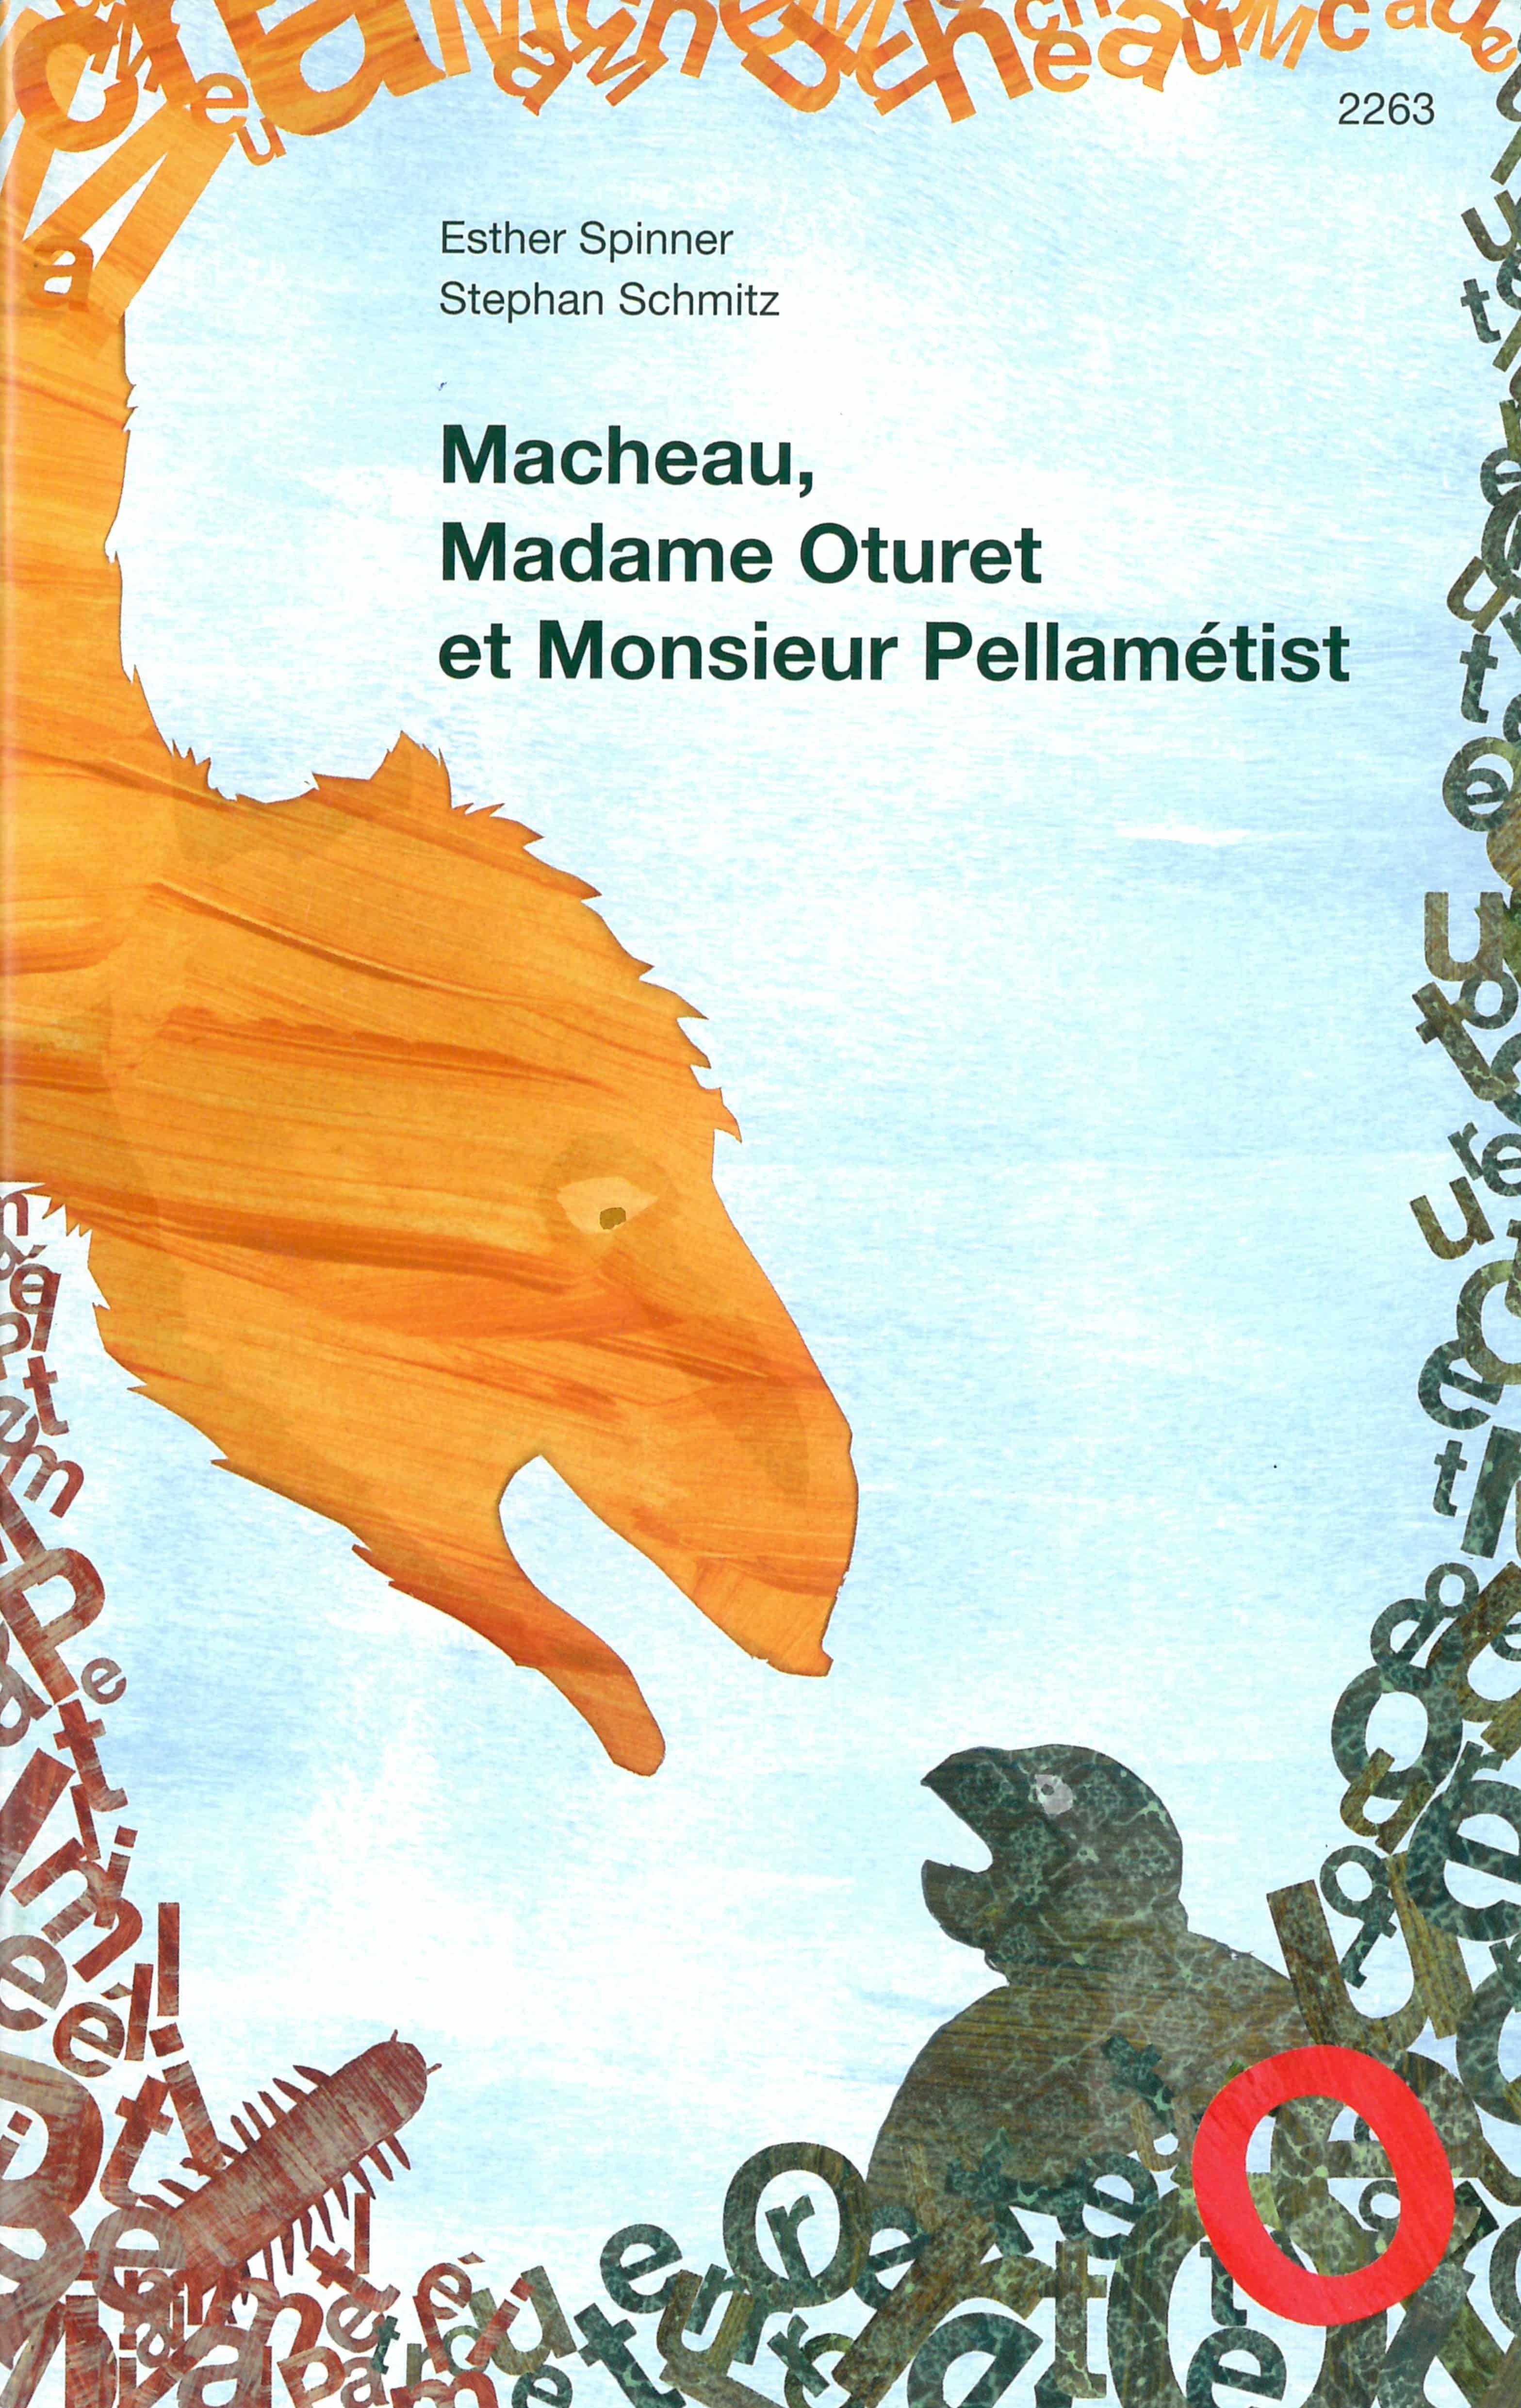 Macheau, Madame Oturet et Monsieur Pellamétist, un livre de Spinner Esther et Schmitz Stephan, éditions OSL, jeux de langage